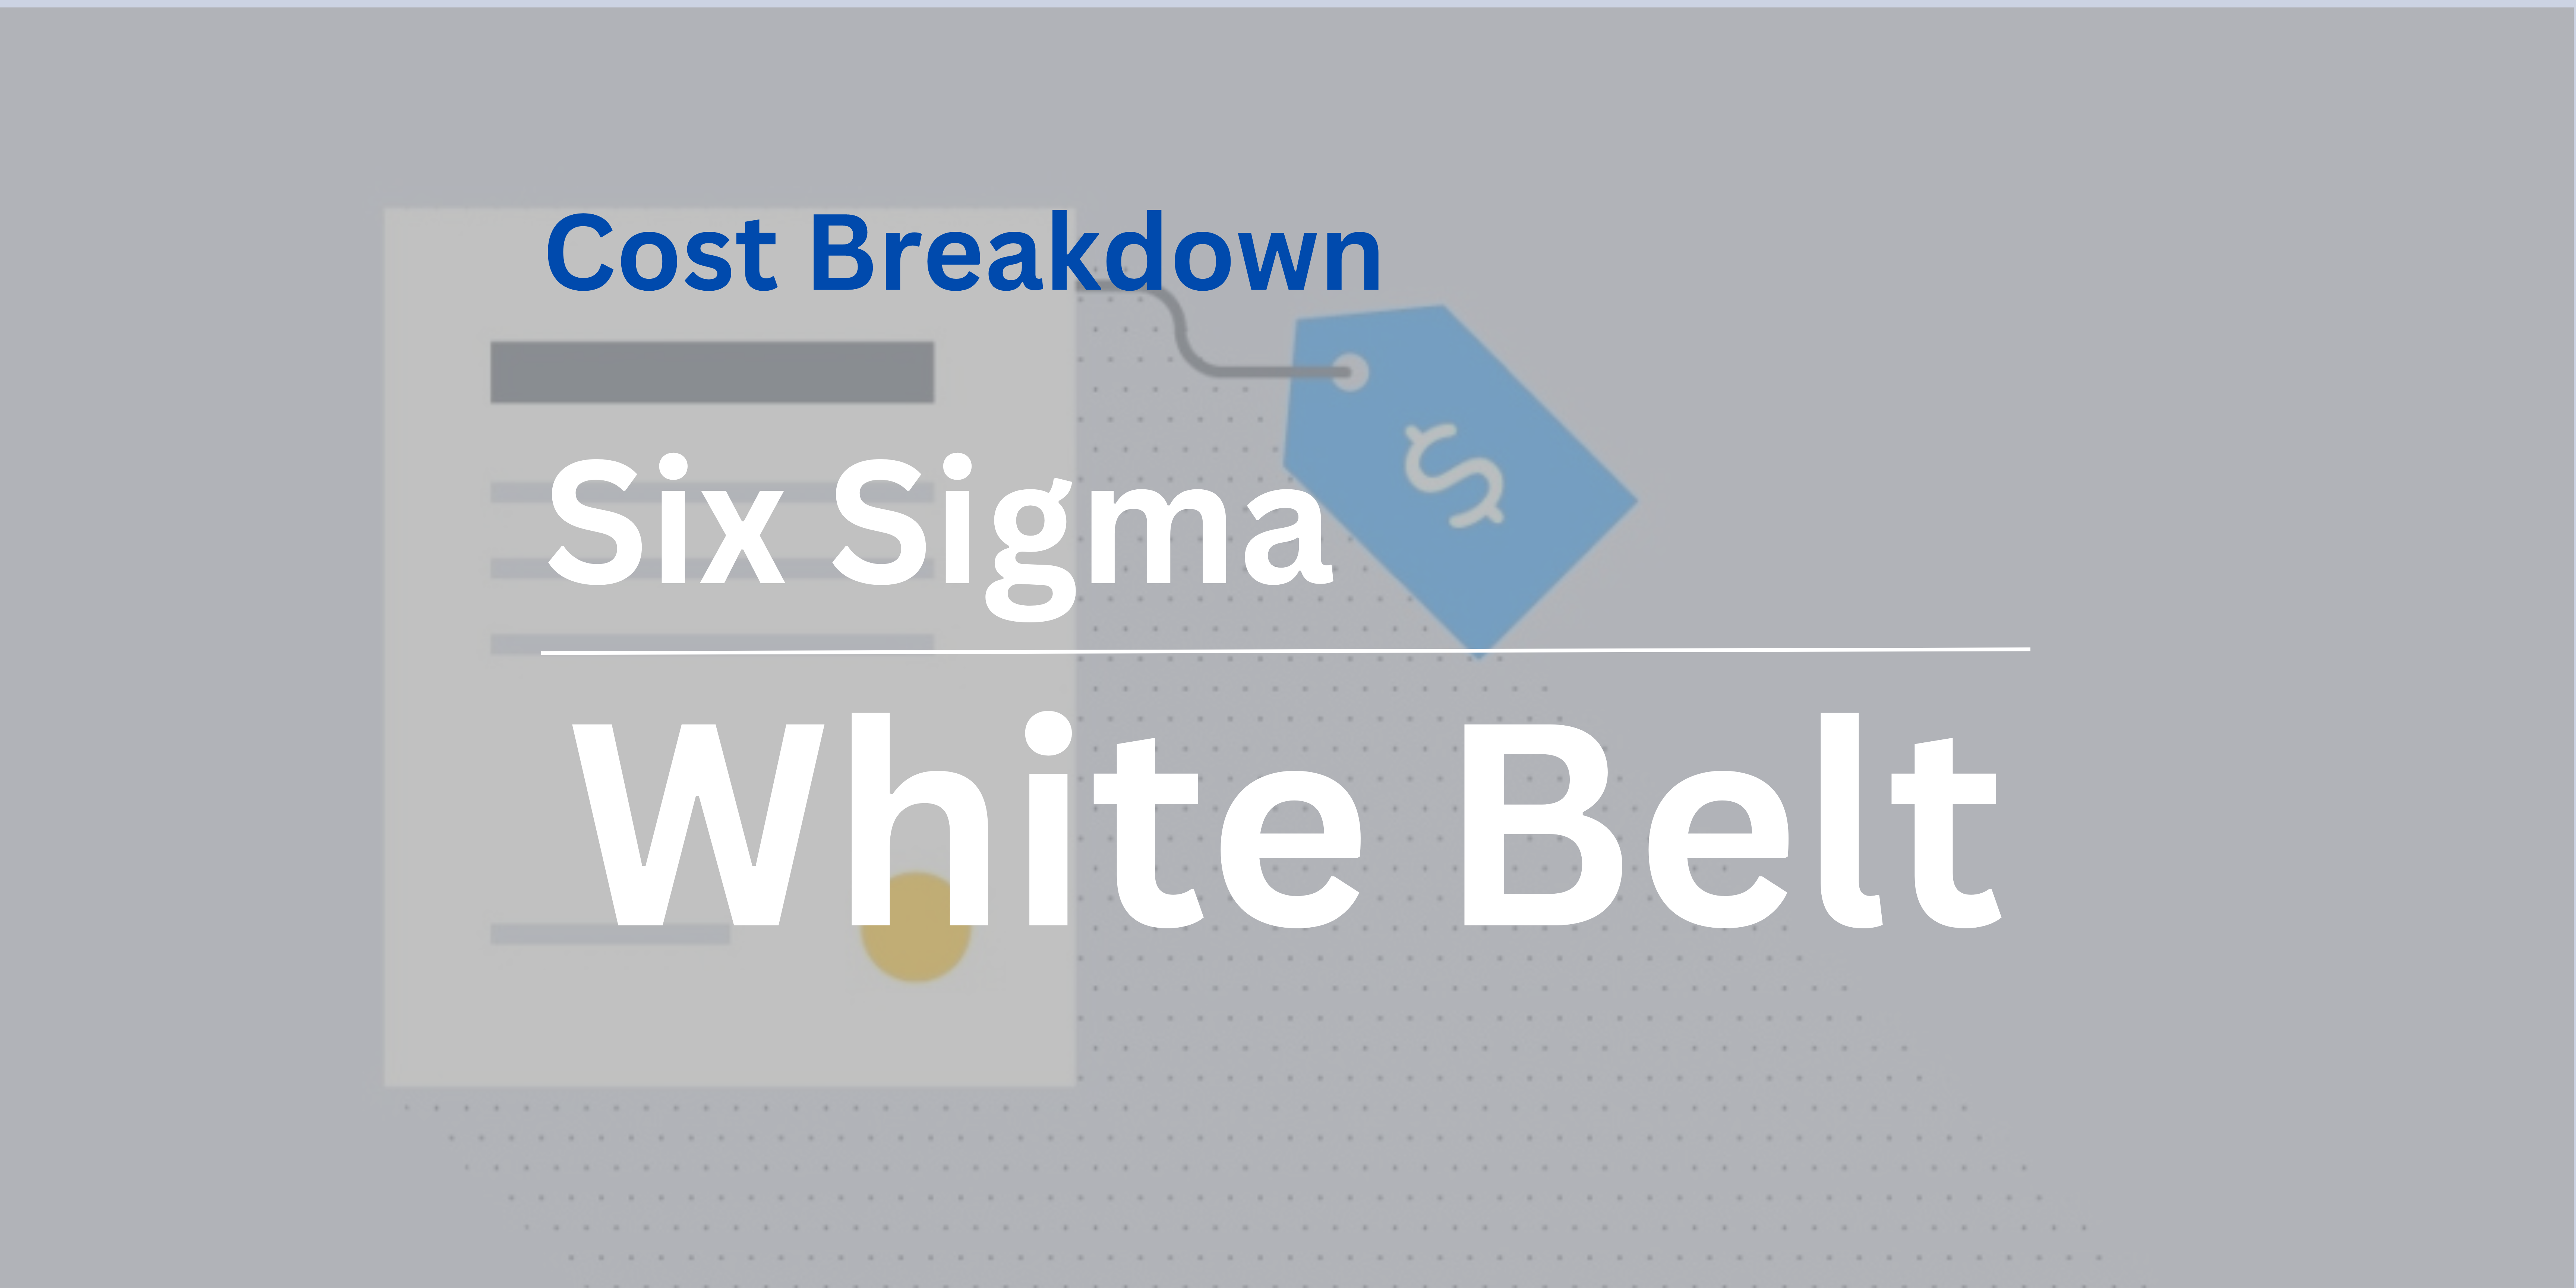 Six Sigma White Belt Certification cost Breakdown